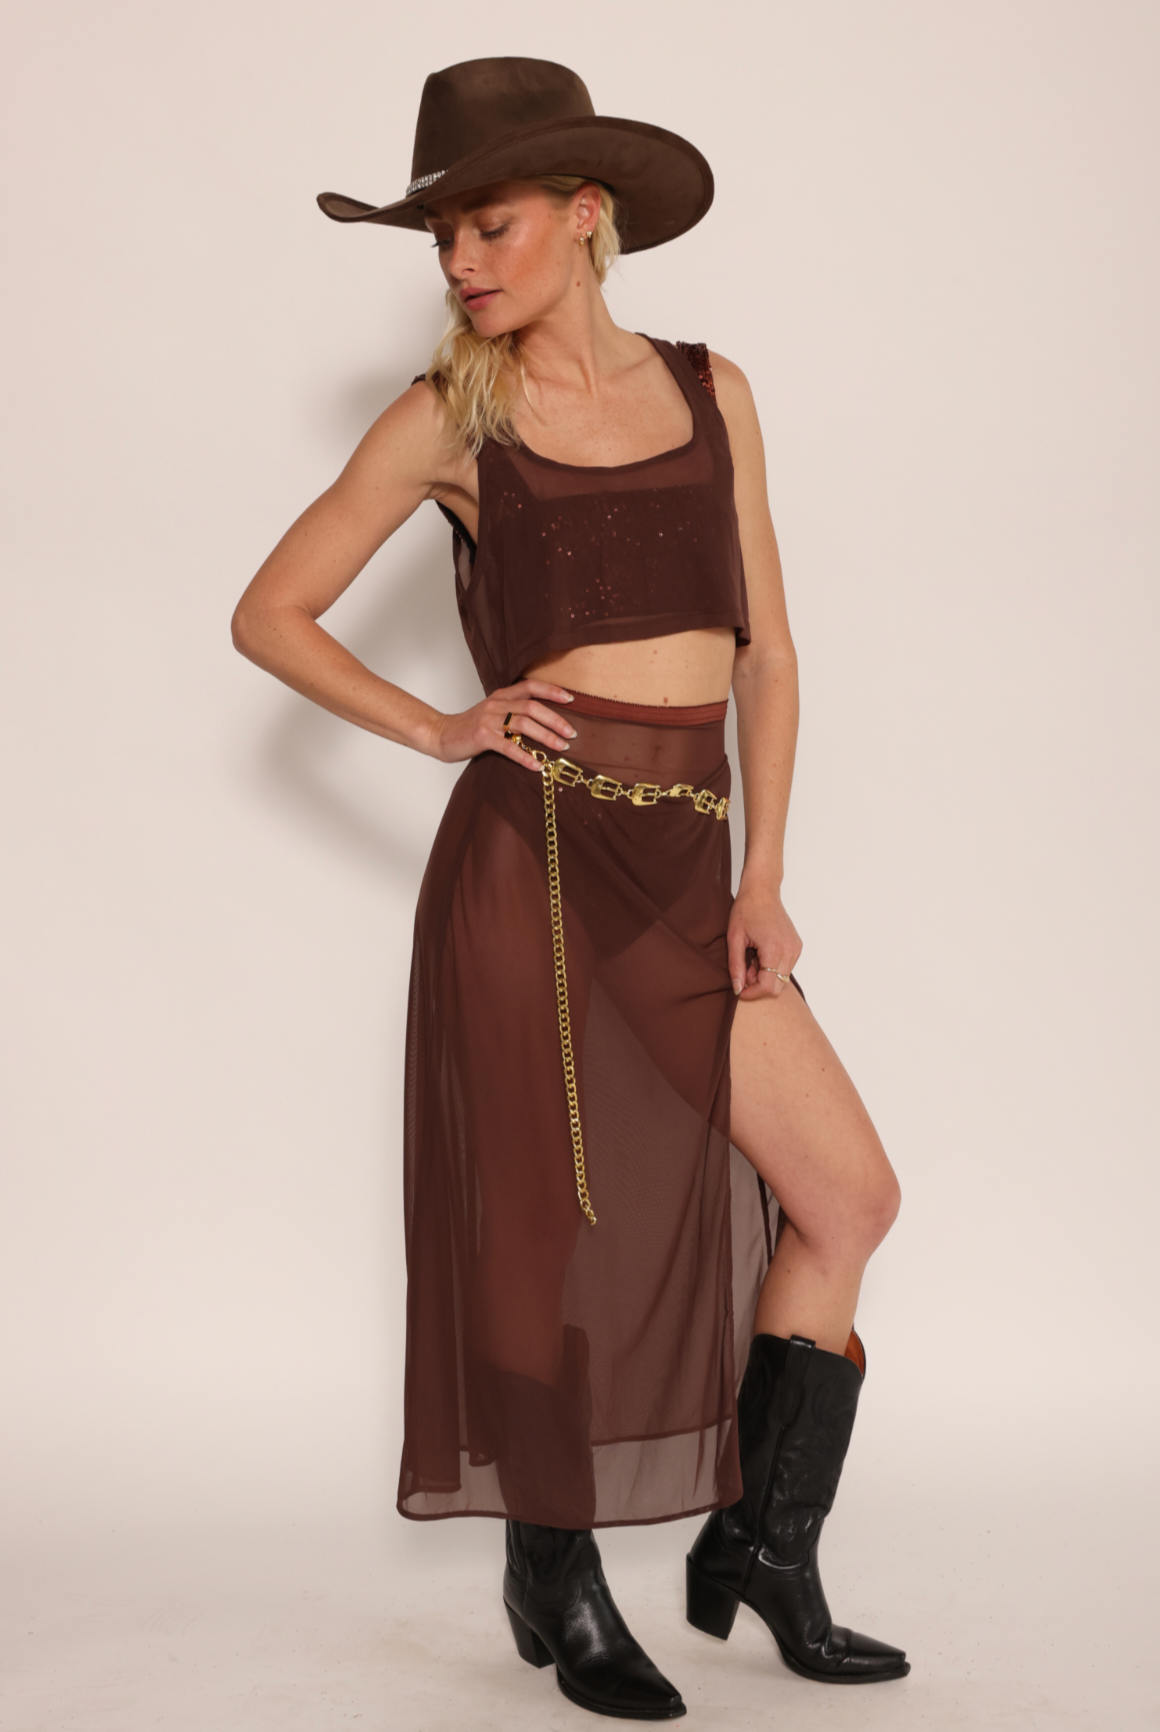 Sheer Midi Skirt with high slit brown